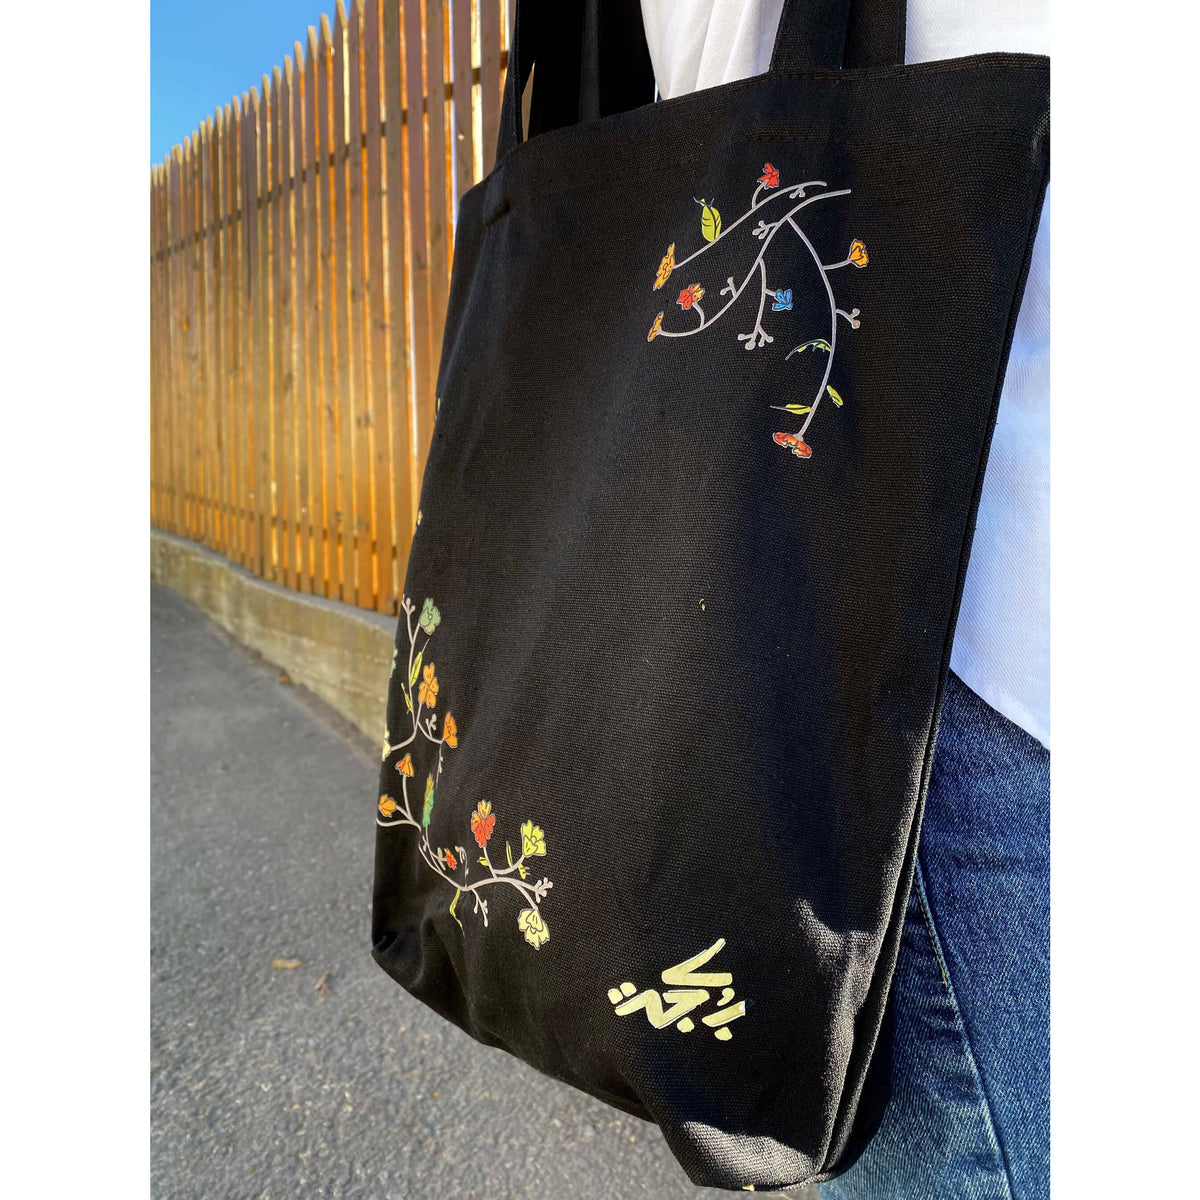 Vintage Flowers Black Tote Bag